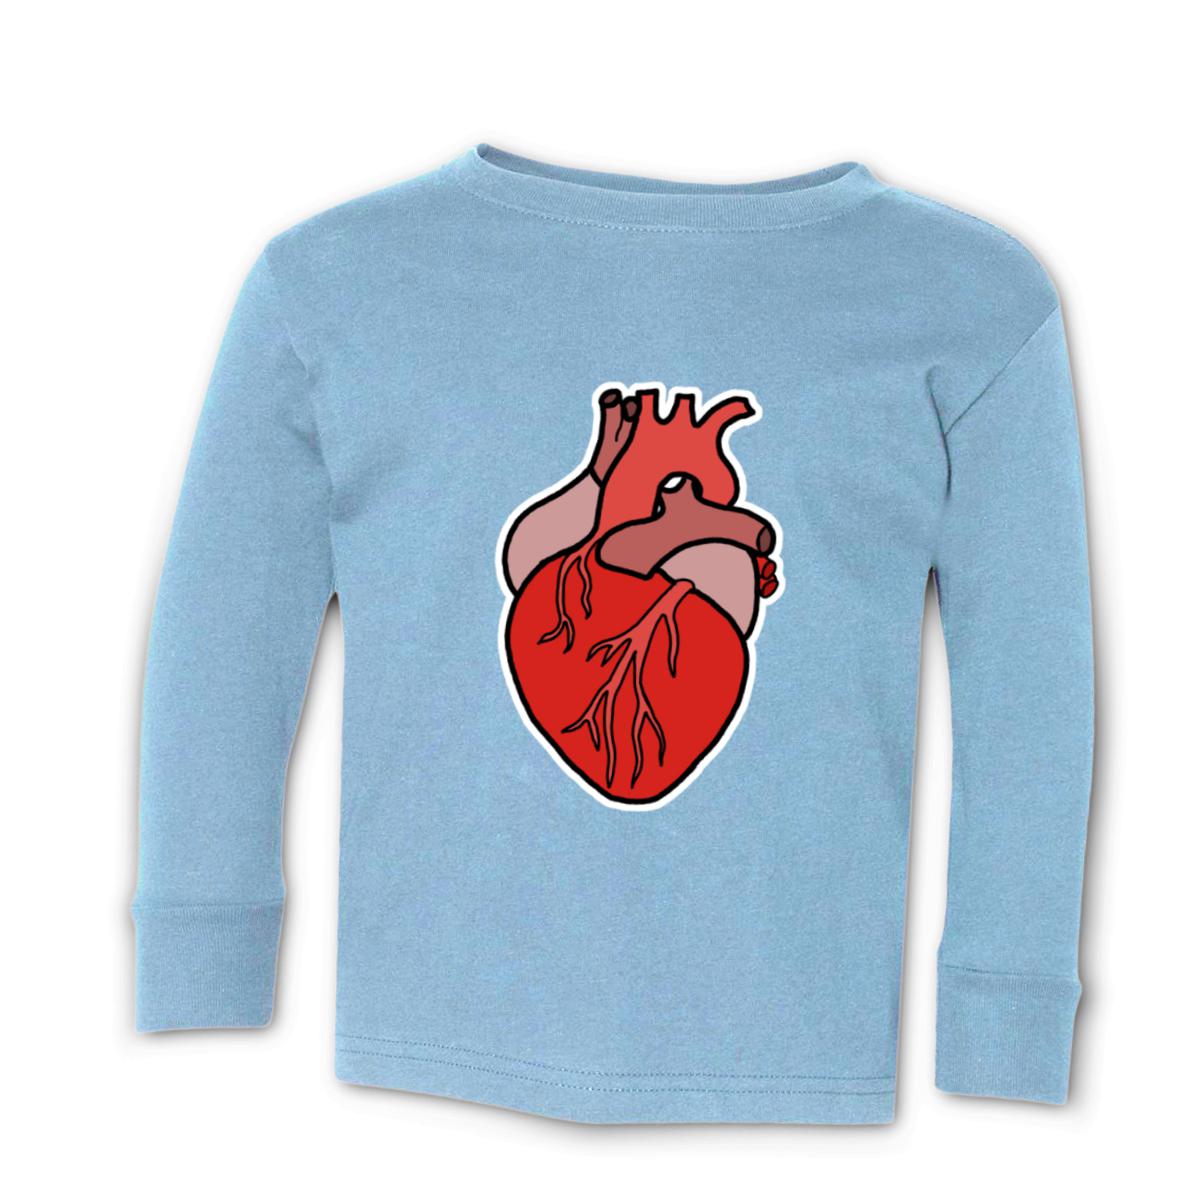 Illustrative Heart Toddler Long Sleeve Tee 2T light-blue